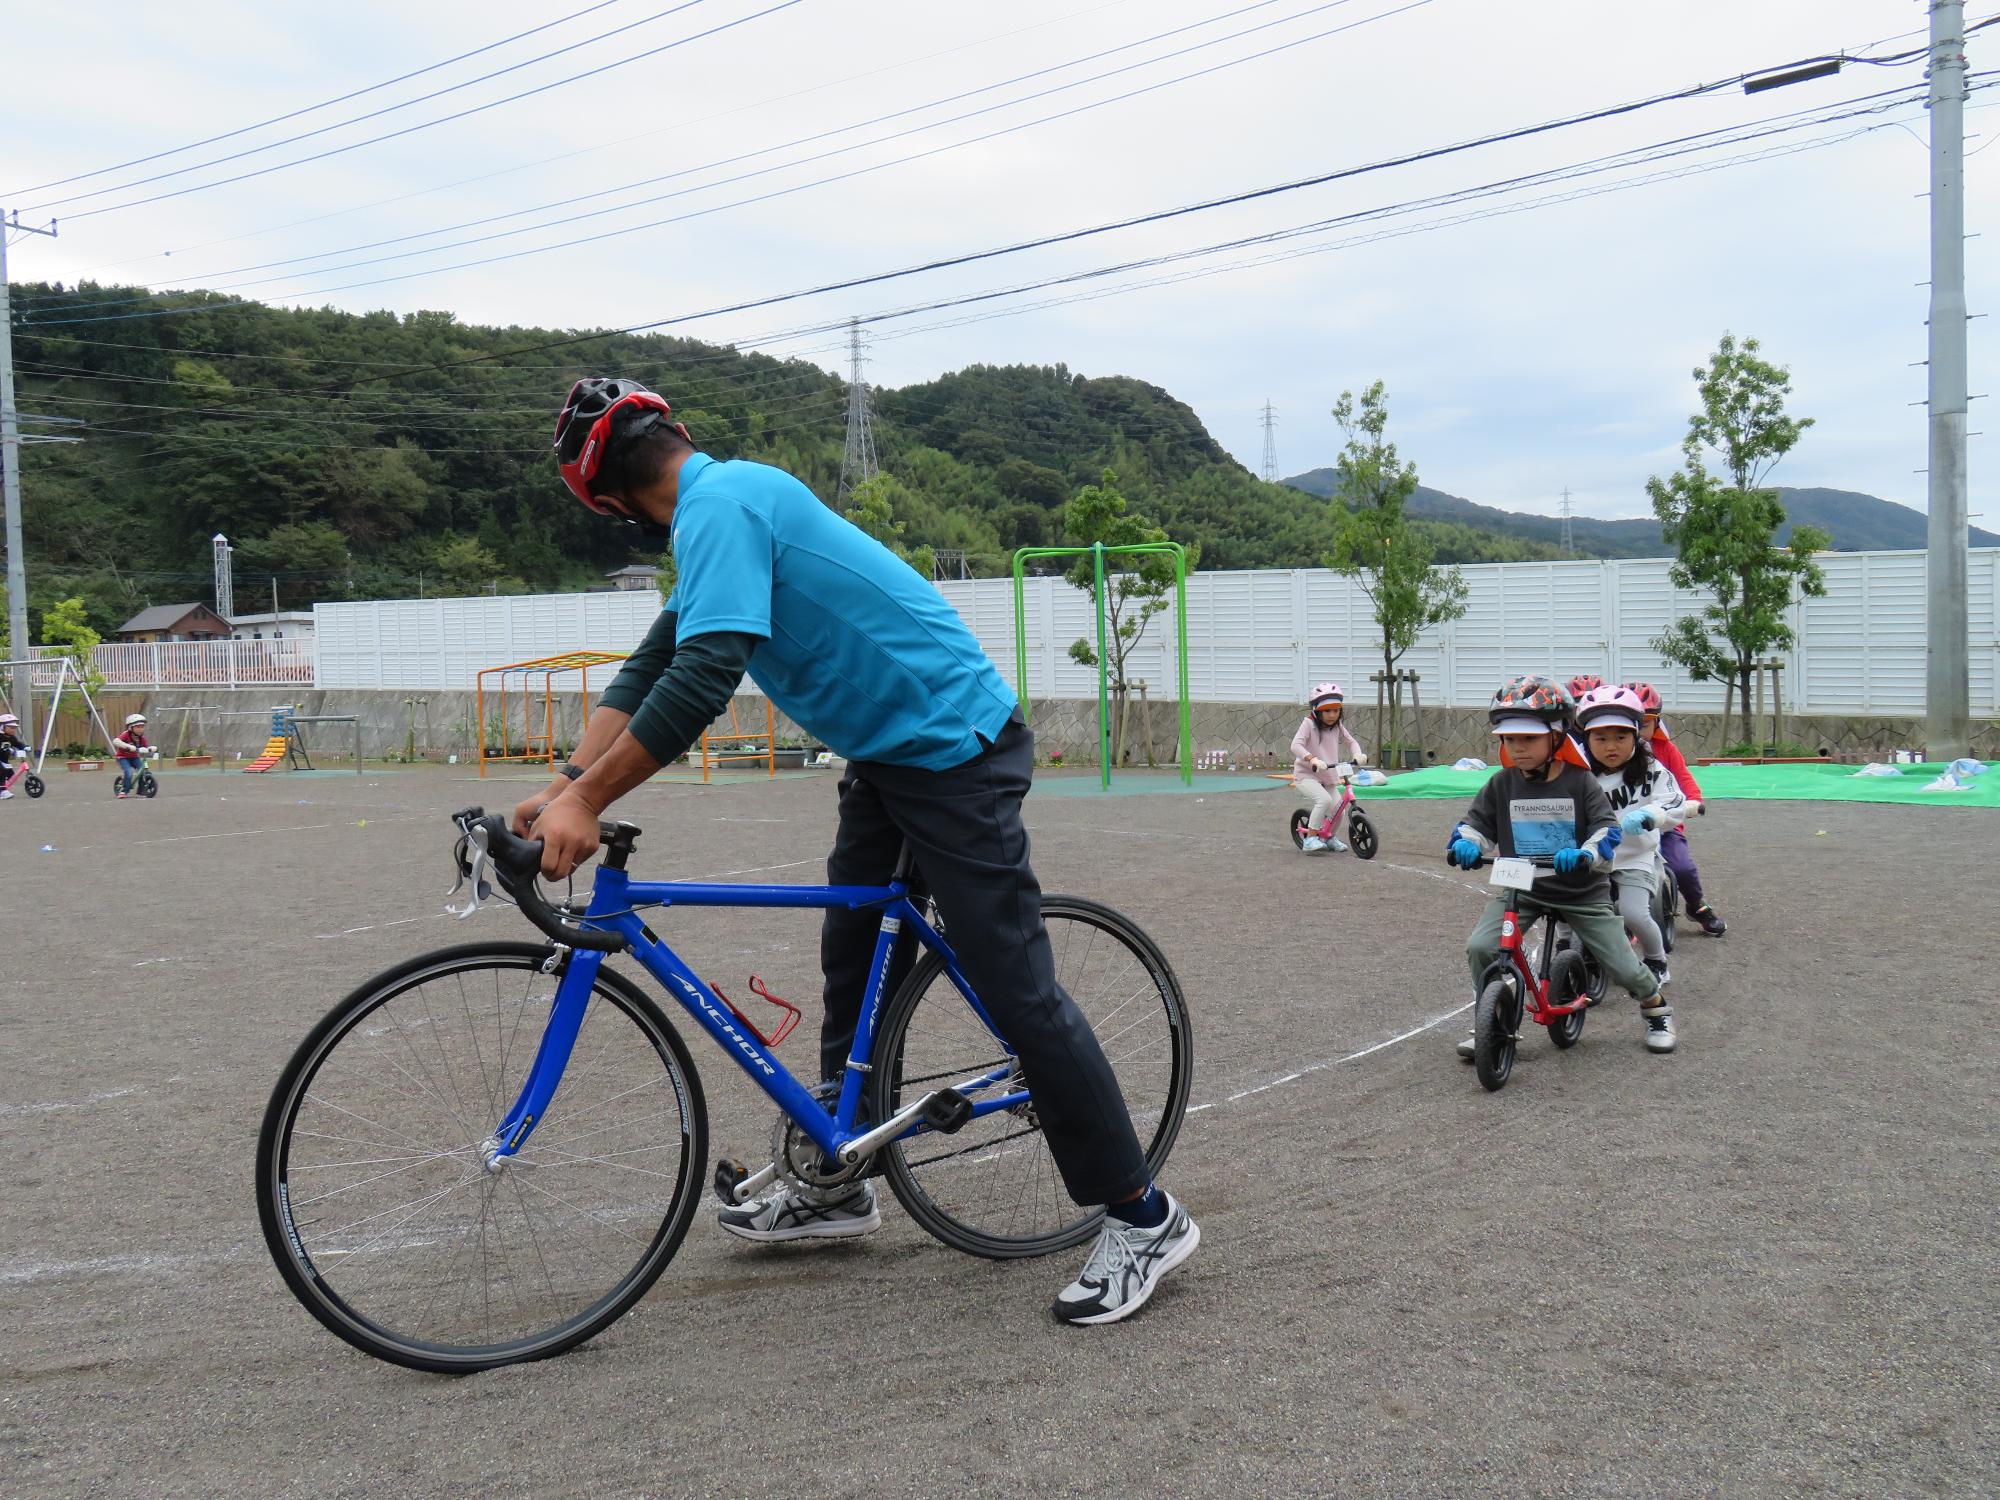 ヘルメットを被って自転車にのった子供たちが縦に並びながら、先頭にいる自転車に乗った男性の後をついて走っている写真